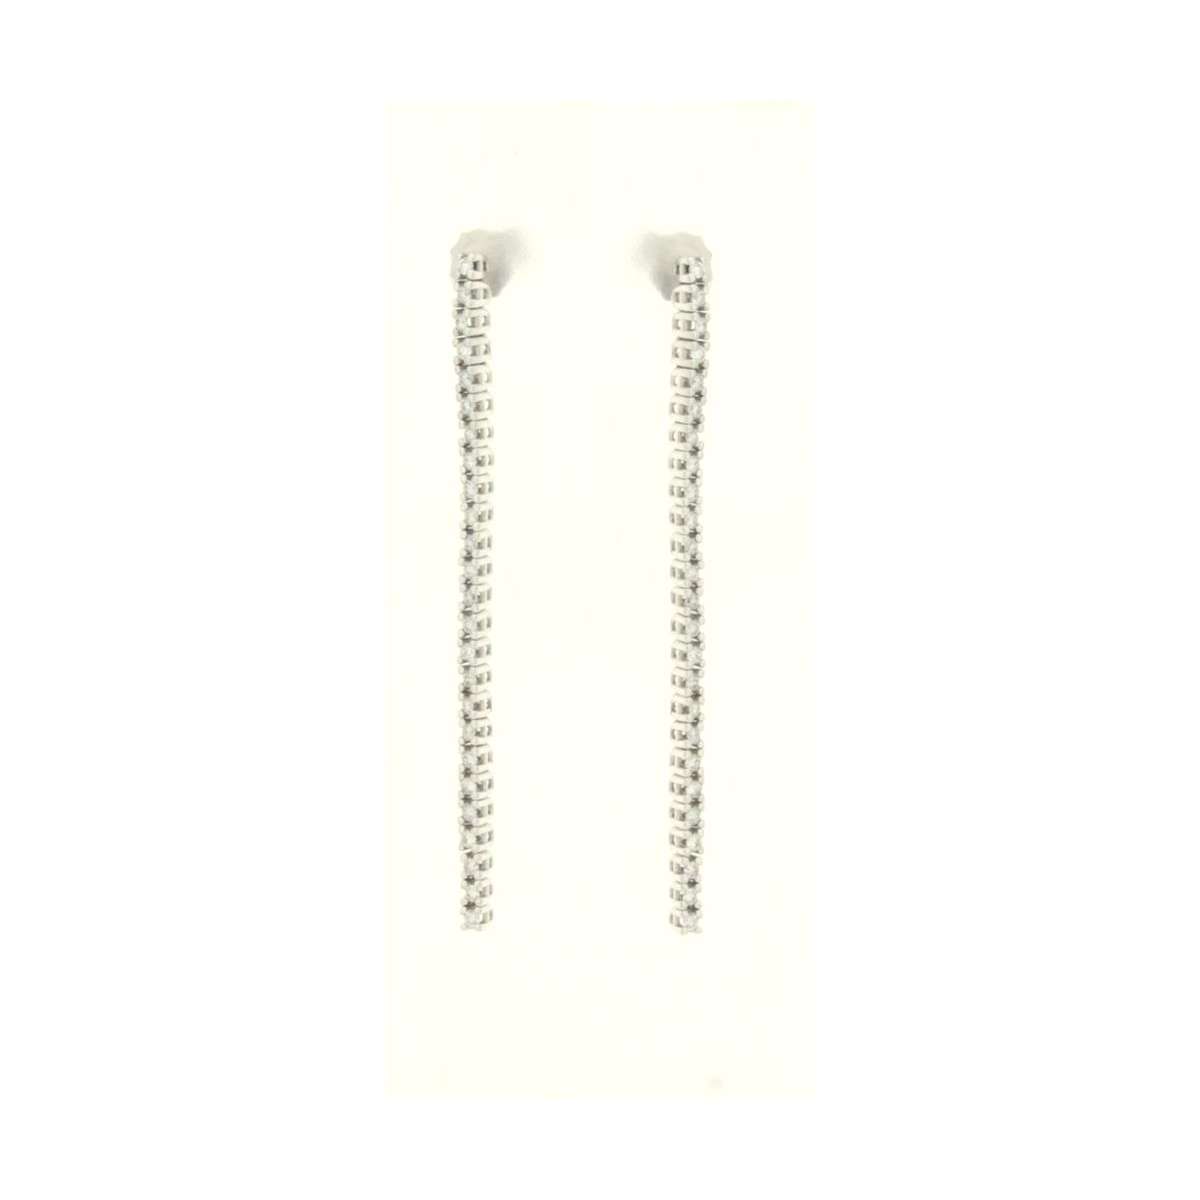 Tennis dangling earrings 0.52 carats diamonds G-VS1